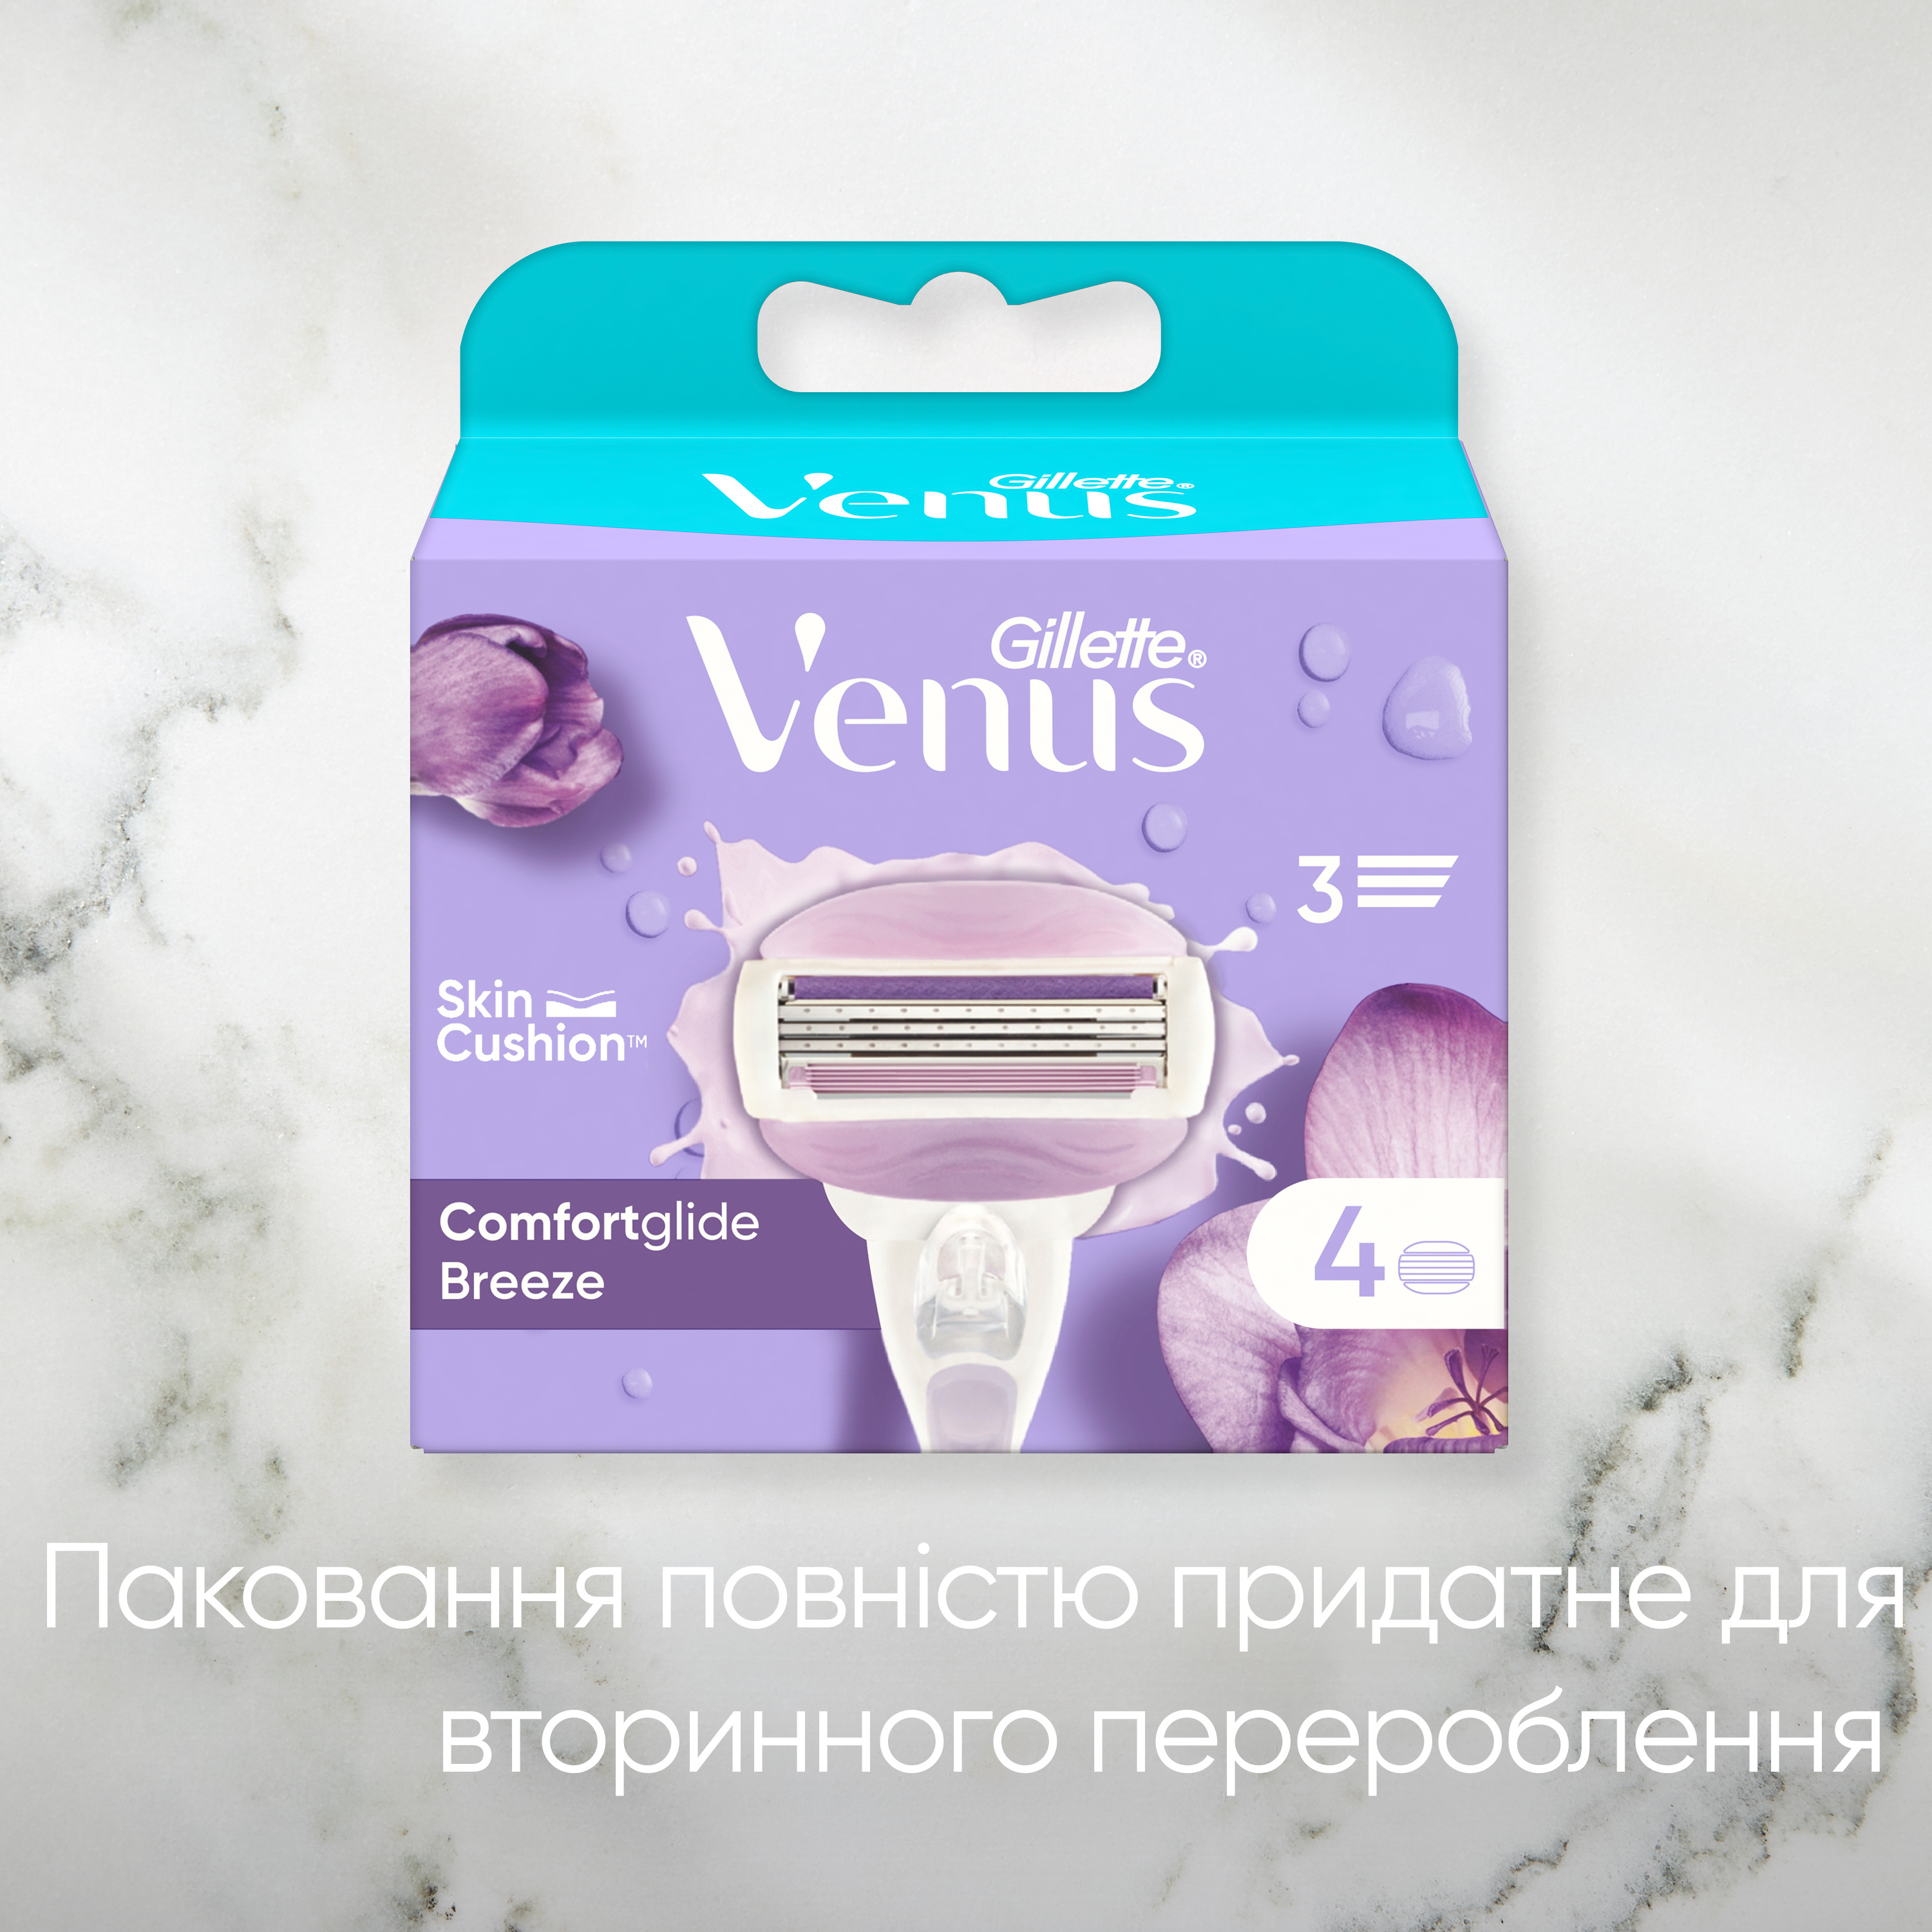 Сменные картриджи для бритья Gillette Venus ComfortGlide Breeze, 4 шт. - фото 7